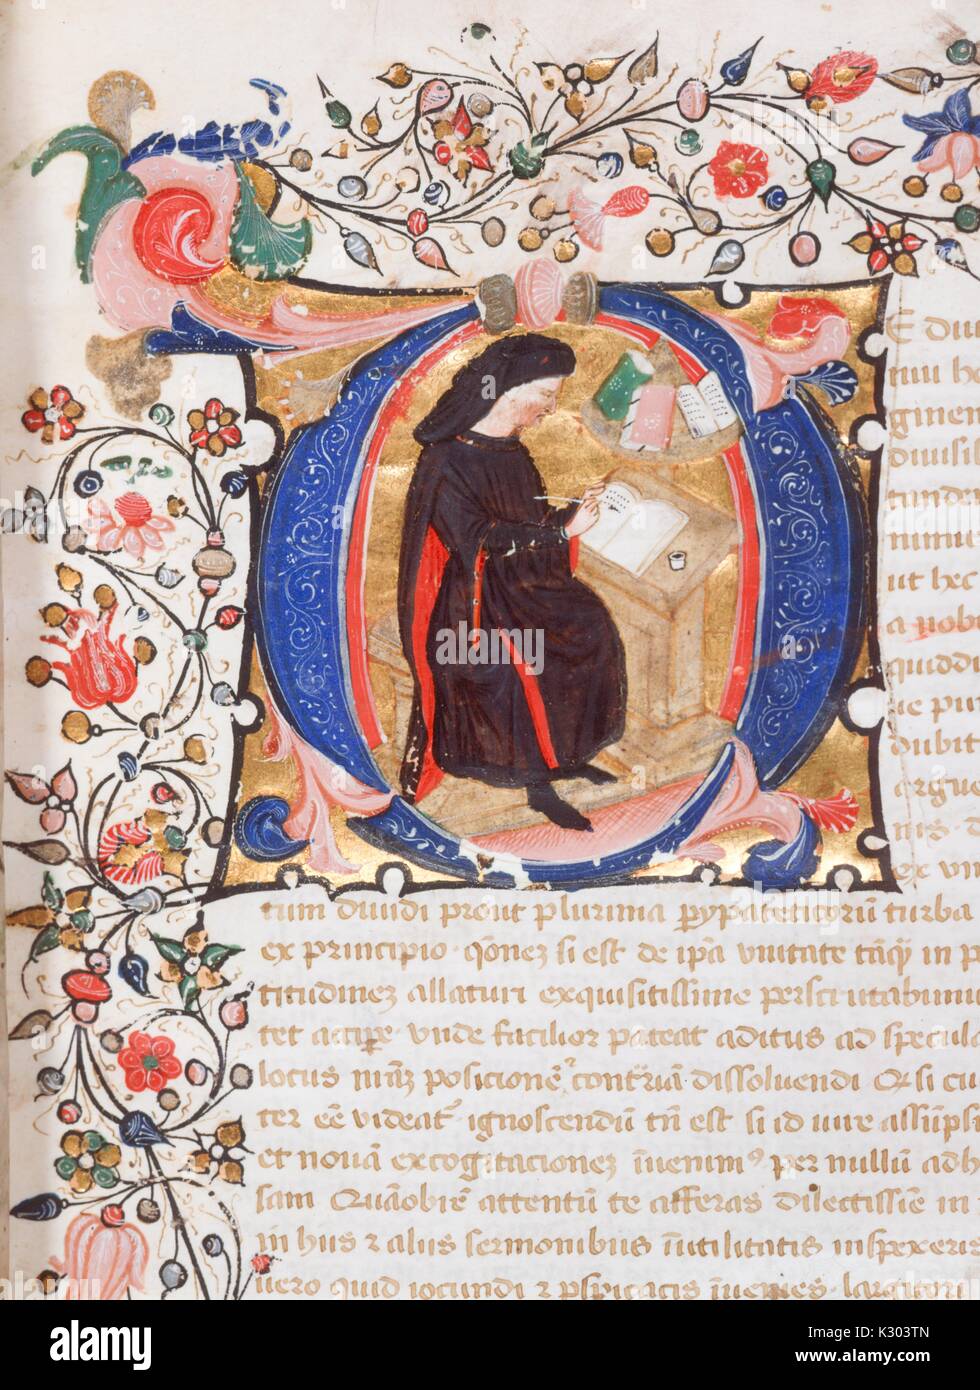 Bilderhandschrift Seite mit Text, eine verzierte Grenze und eine Abbildung eines Schreibers an der Arbeit, von La ate Lateinische Handschrift aus dem 14. Jahrhundert Buch in Italien, 1380 geschrieben. Stockfoto